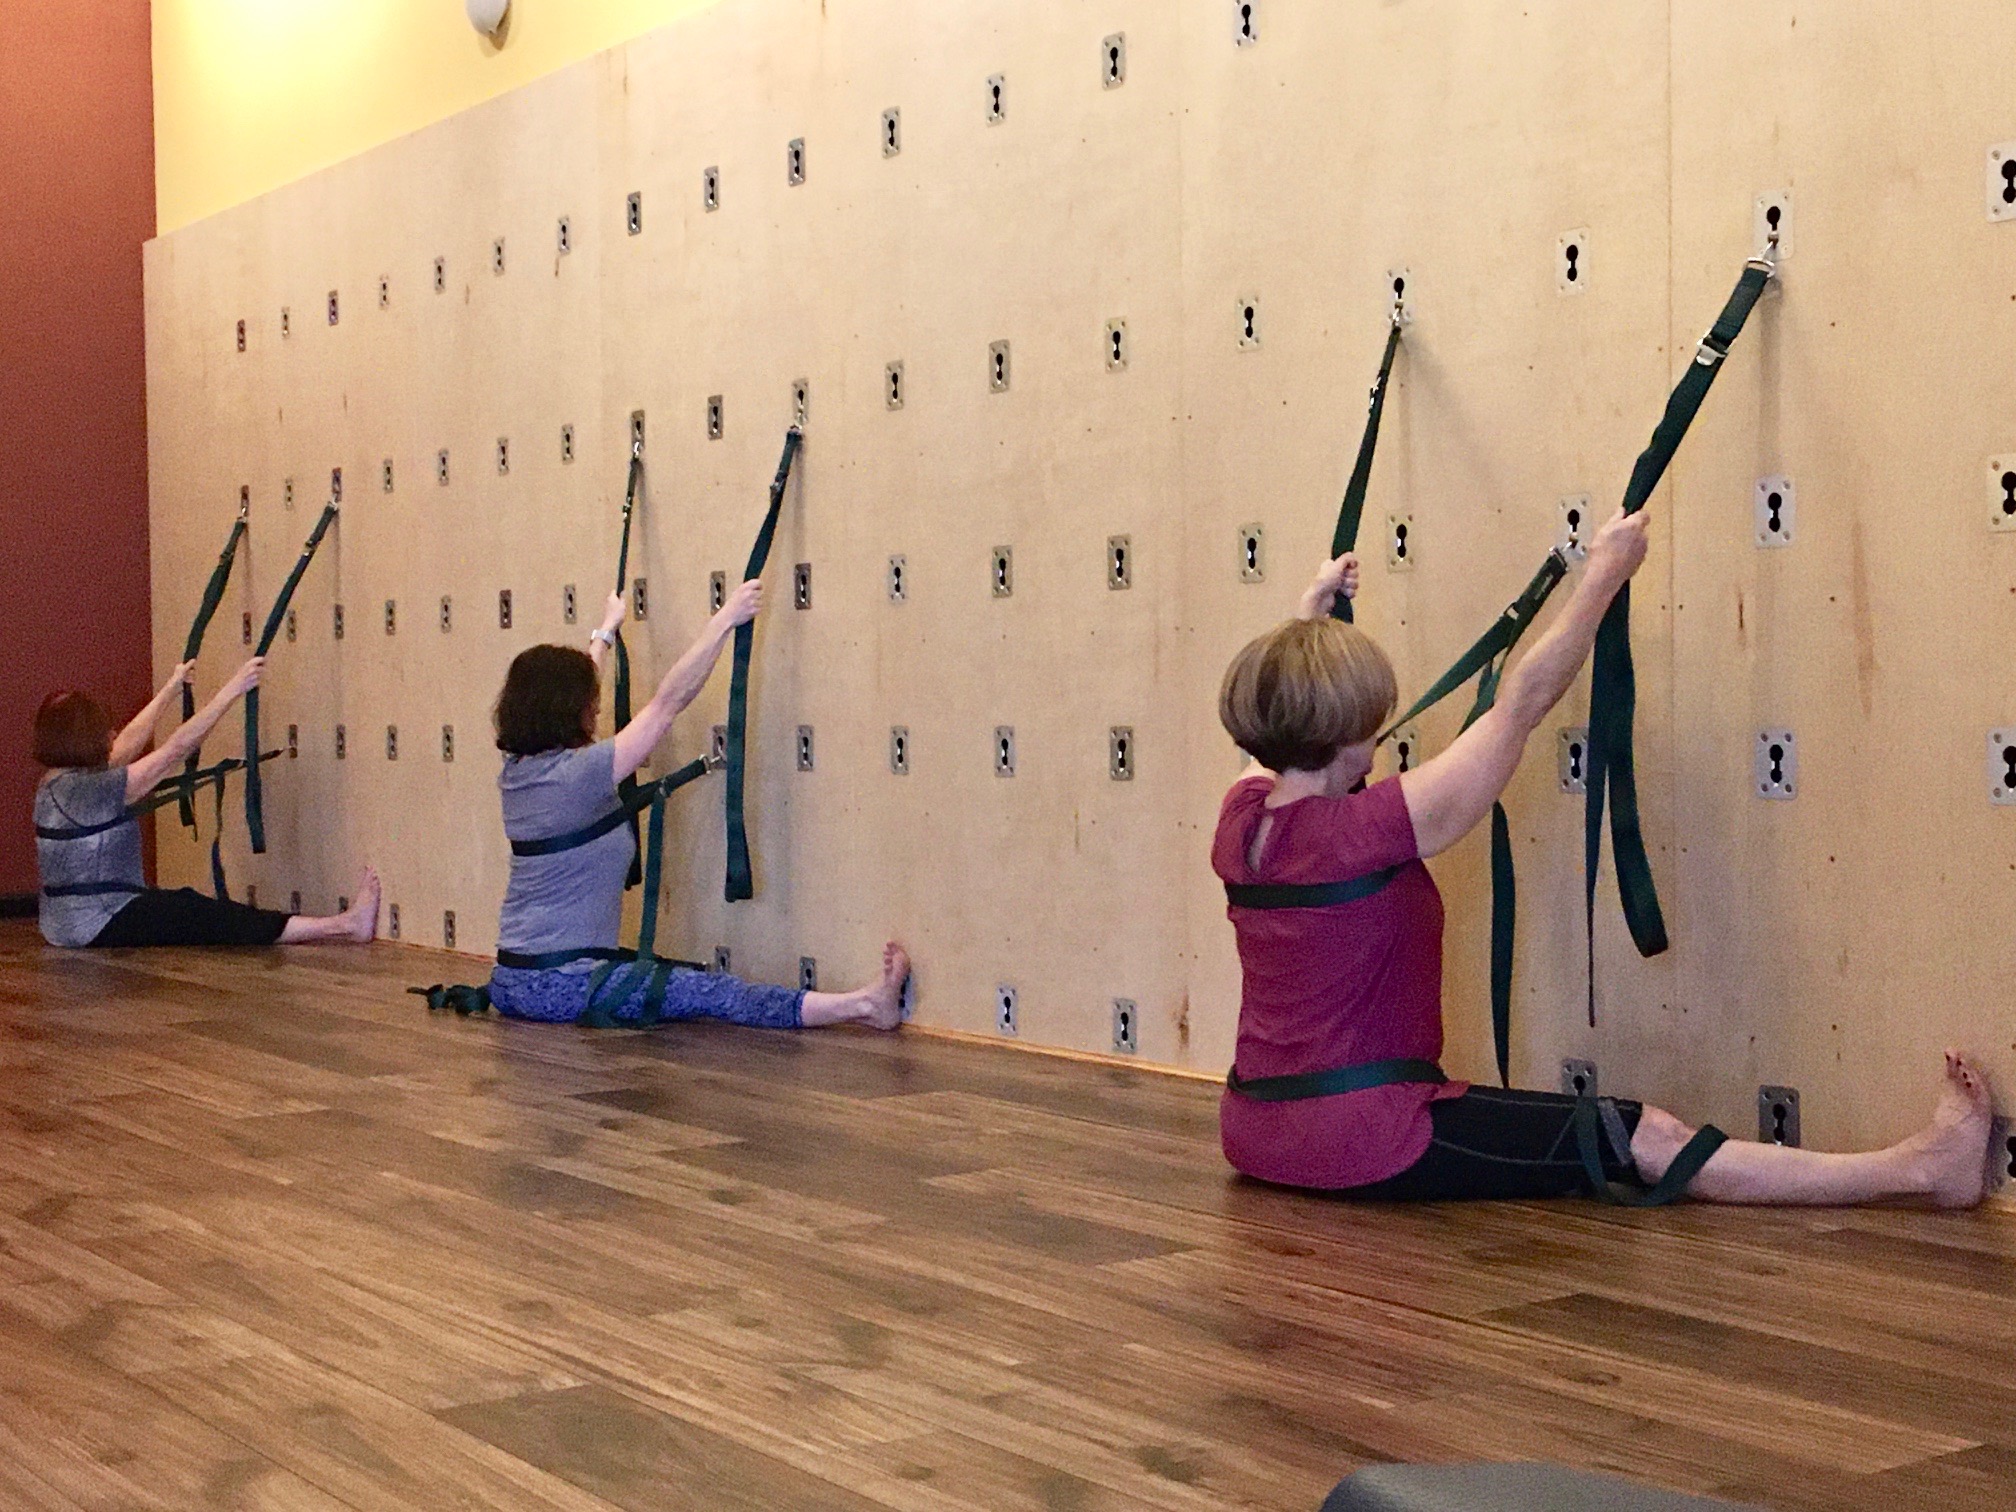 Austin Iyengar Yoga on X: Rope wall Upavistha Konasana at Austin